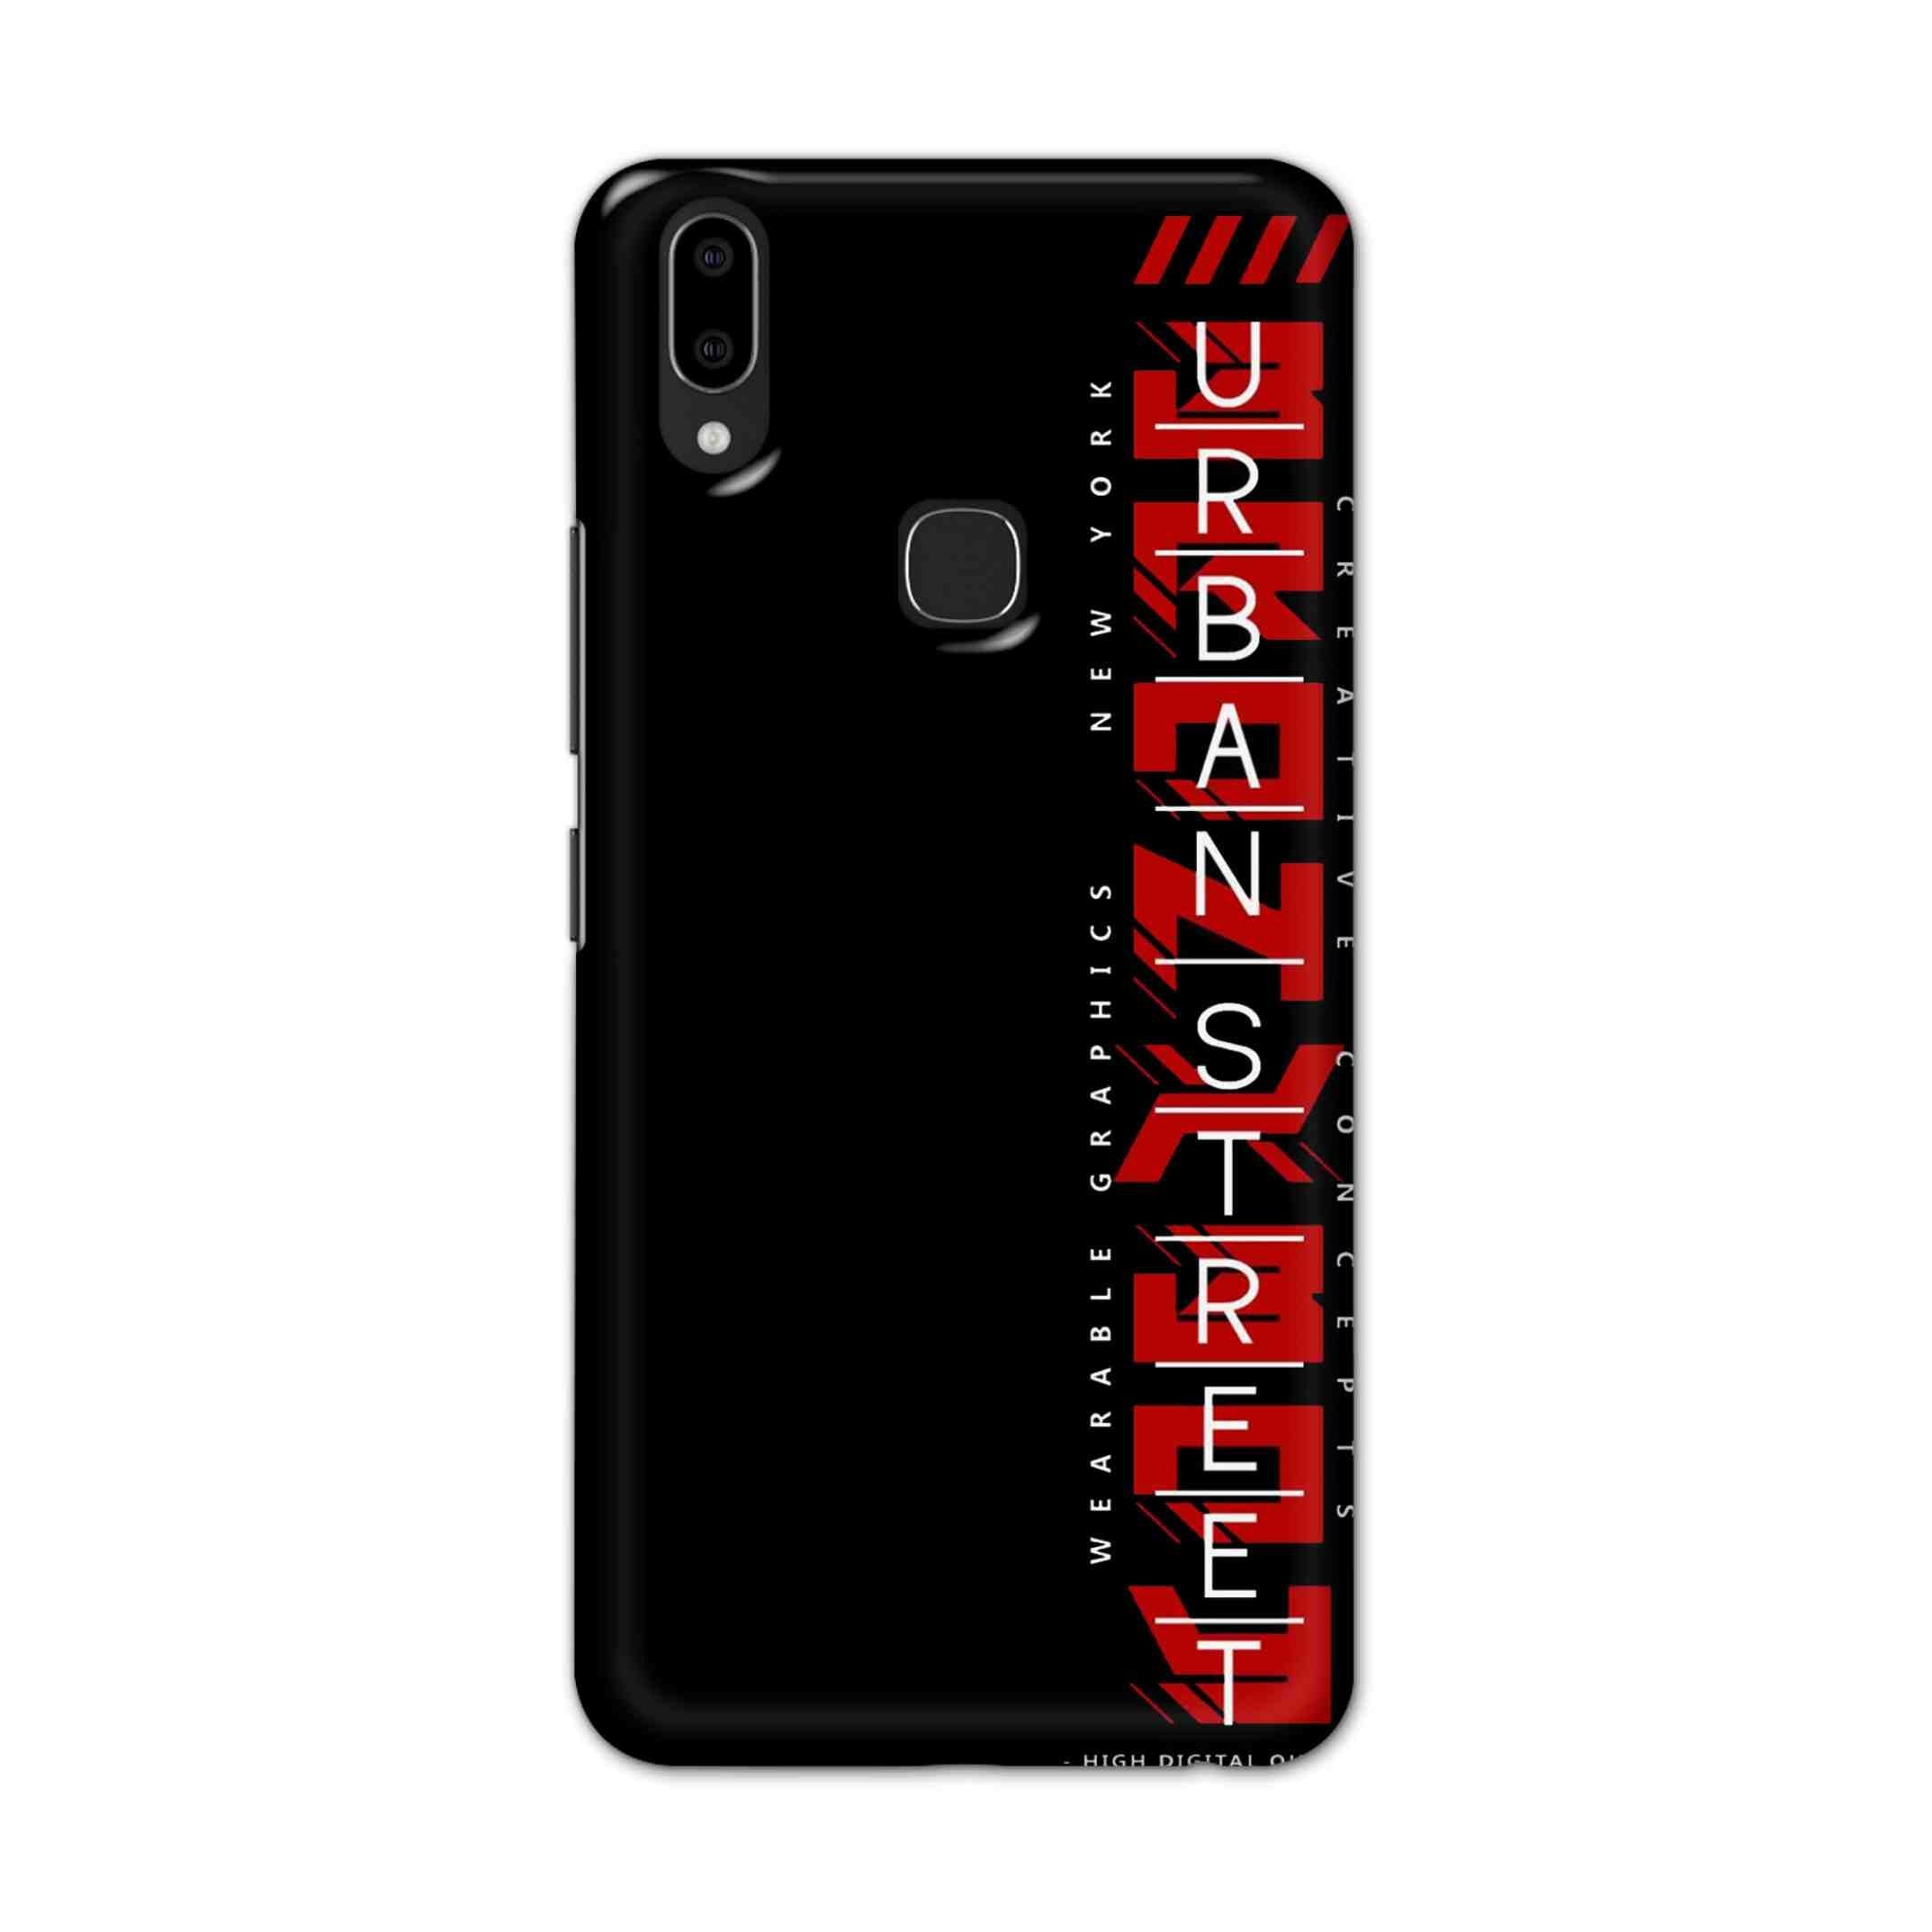 Buy Urban Street Hard Back Mobile Phone Case Cover For Vivo V9 / V9 Youth Online